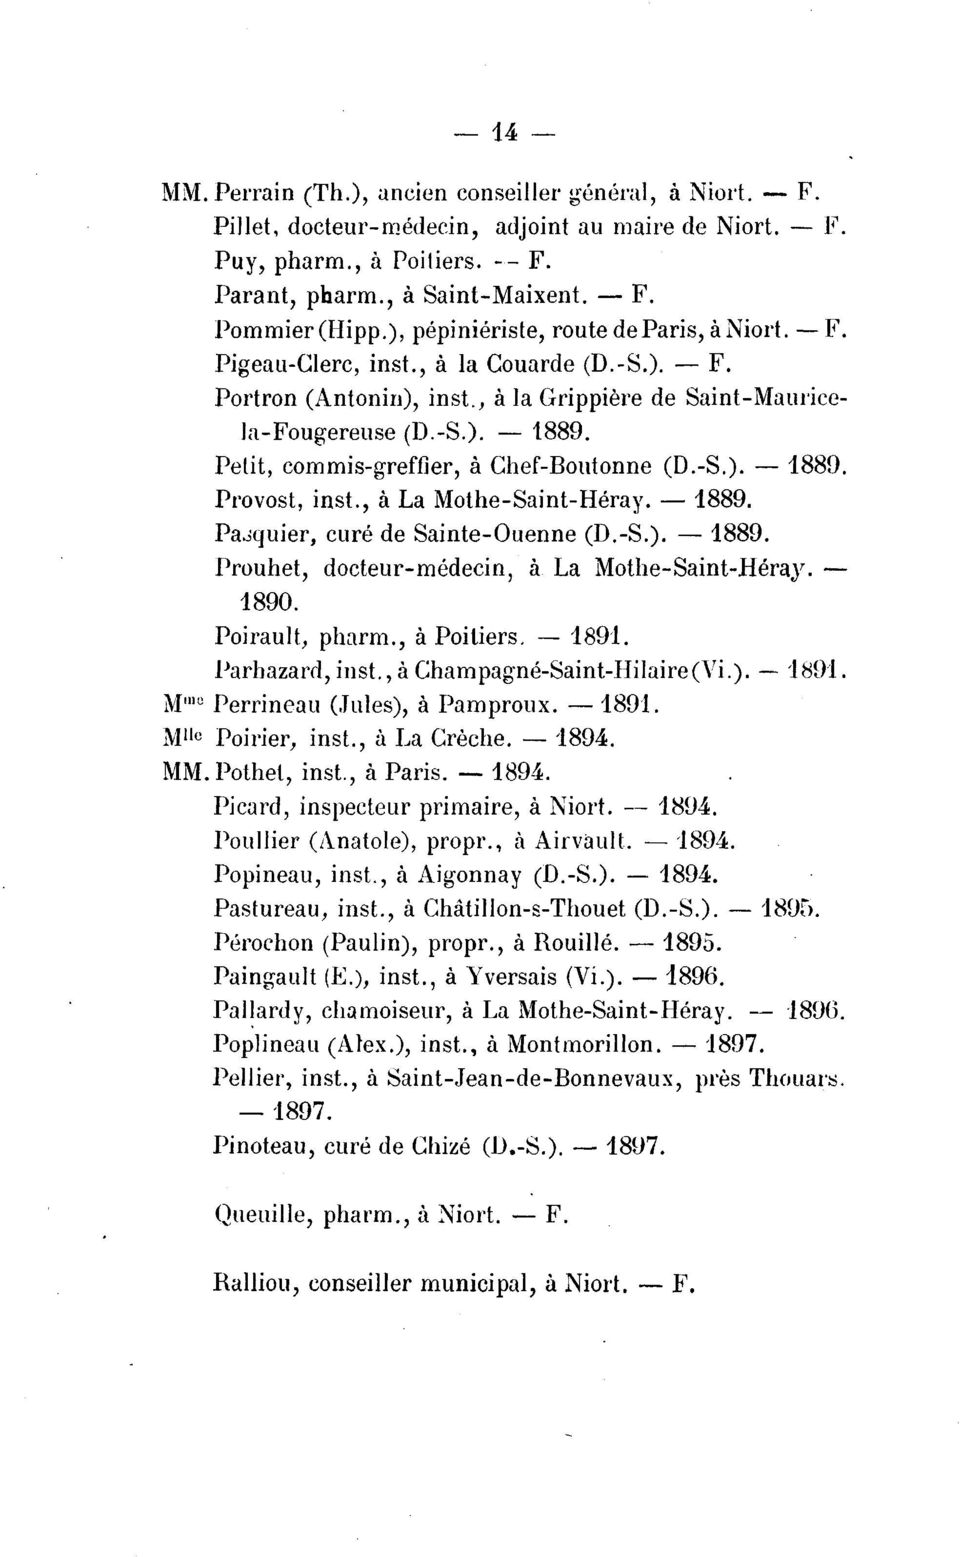 Petit, commis-greffier, a Chef-Boutonne (D.-S.). - 188!). Provost, inst., a La Mothe-Saint-Heray.- 1889. Pa..;quier, cure de Sainte-Ouenne (D.-S.). - 1889.